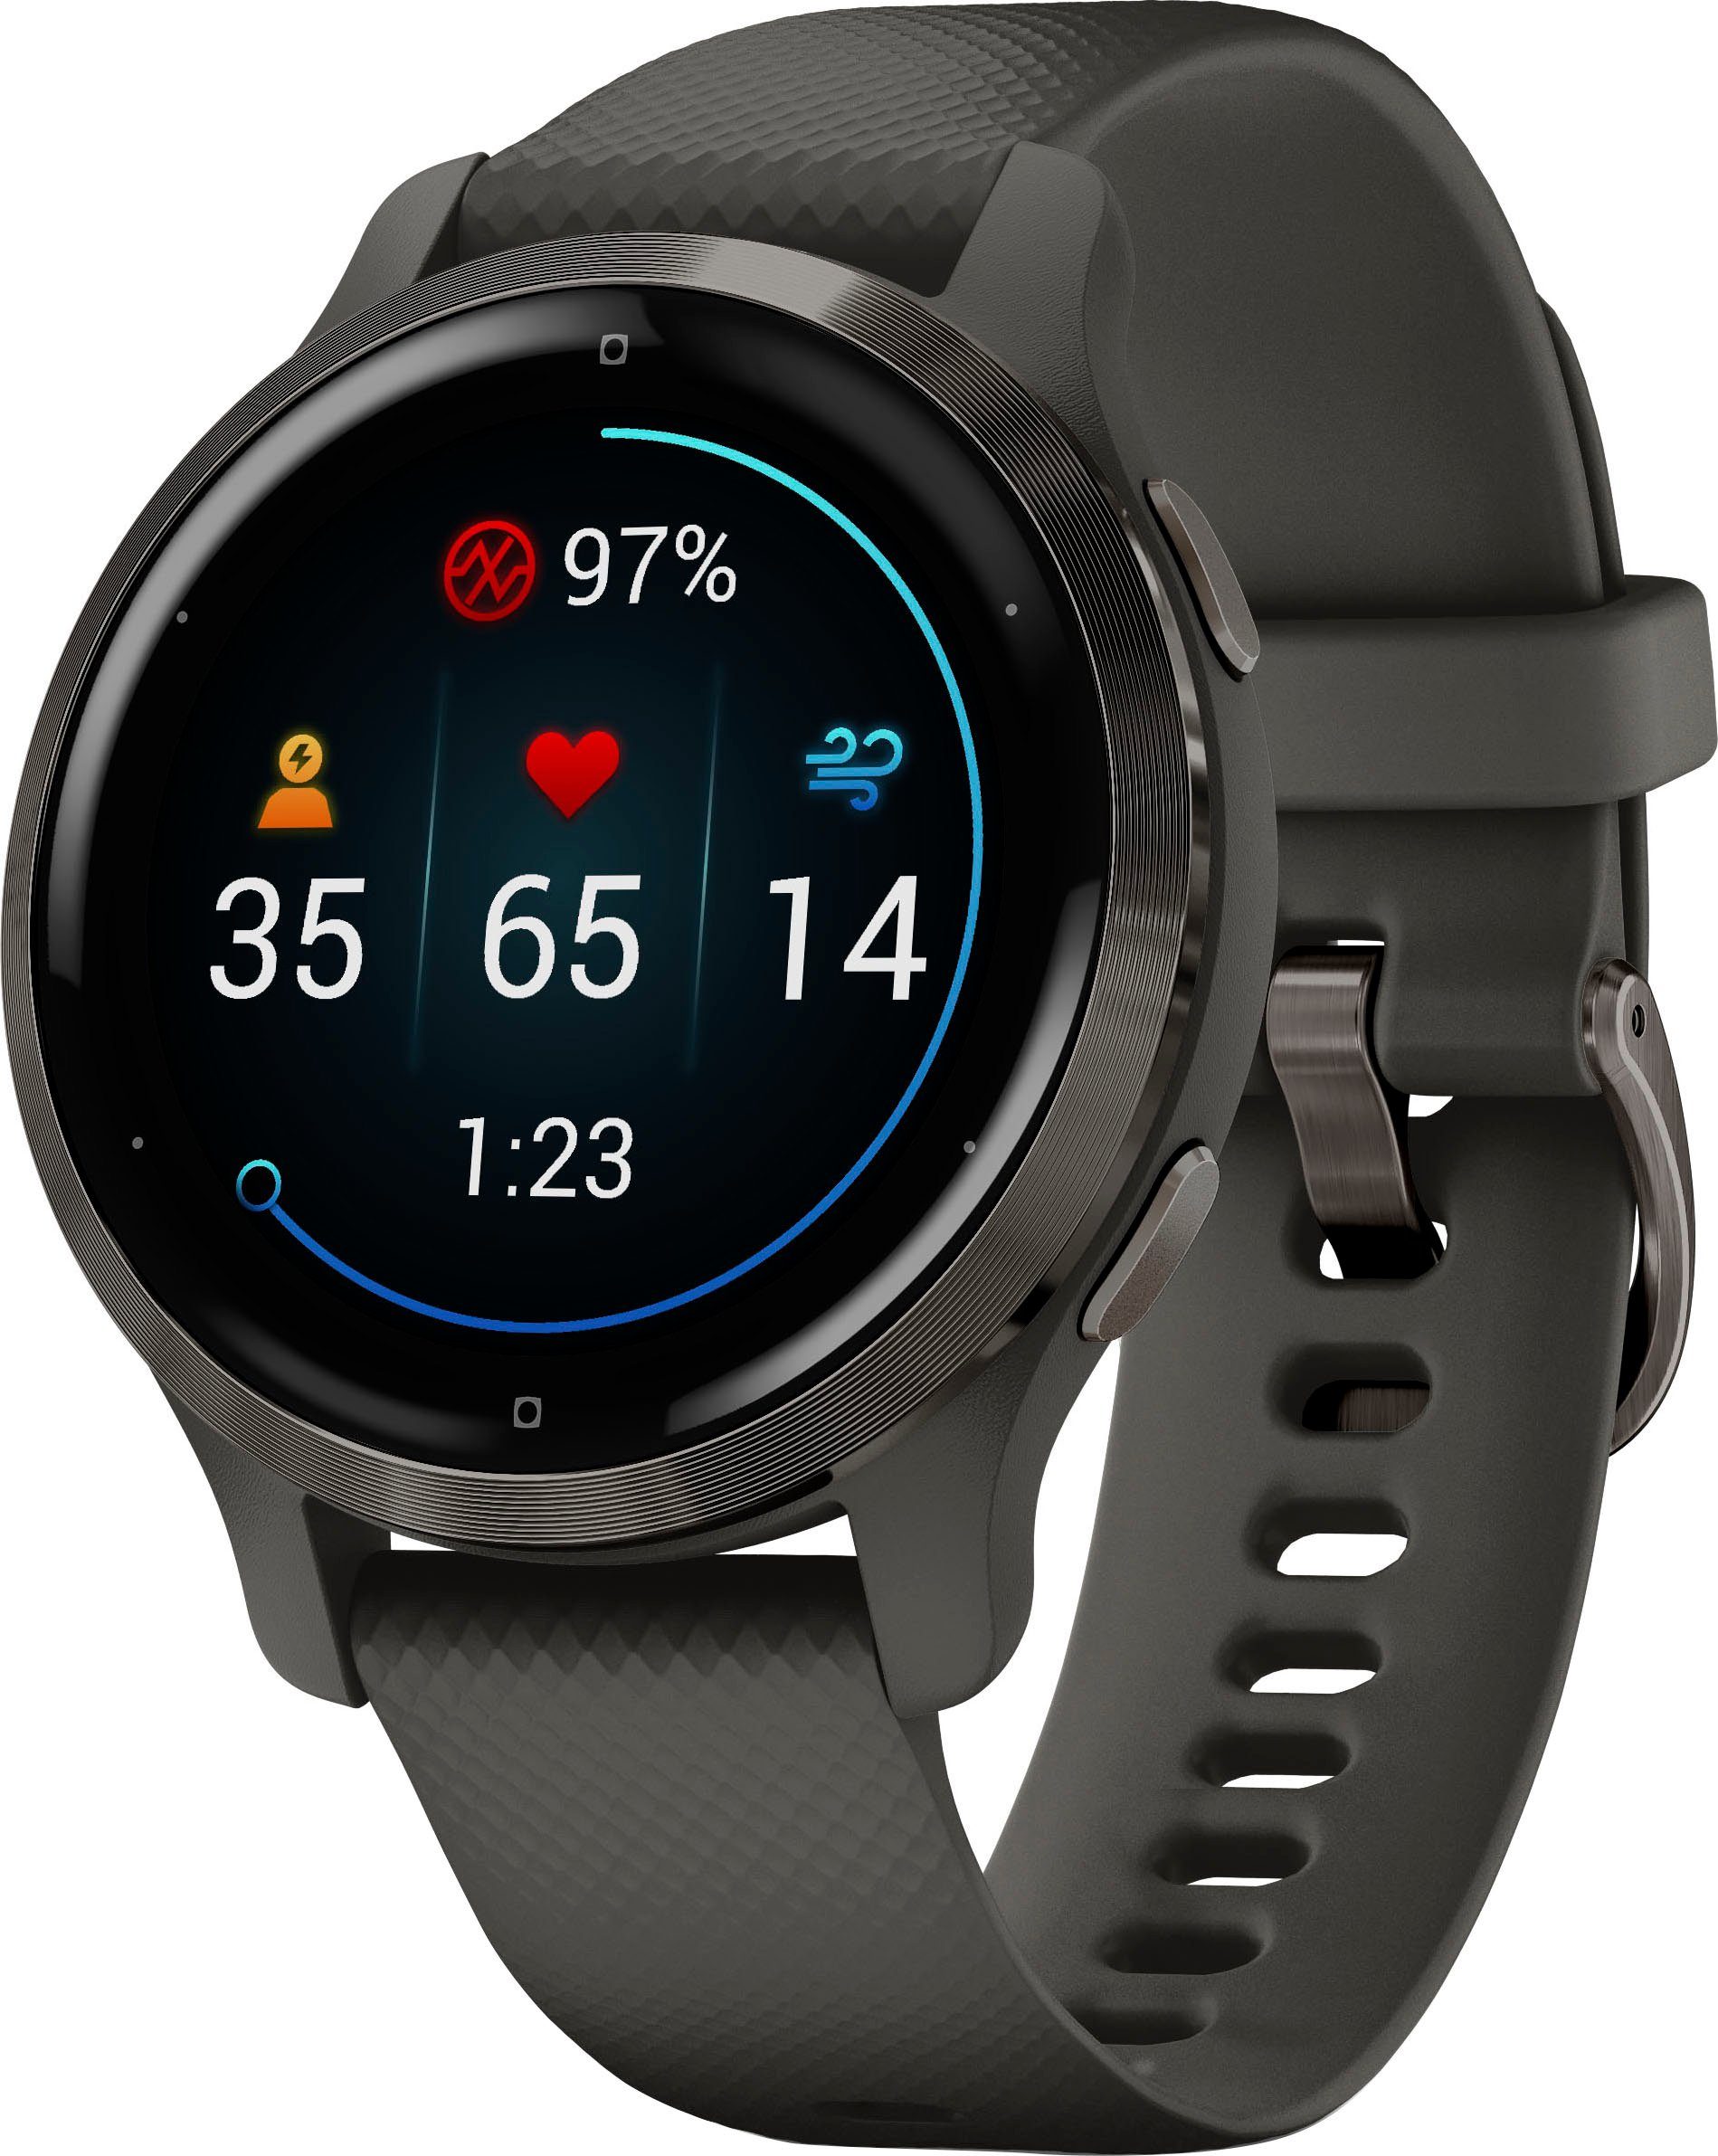 Smartwatch Venu vorinstallierten Garmin 25 Zoll), dunkelgrau dunkelgrau Sport-Apps (2,8 | 2S cm/1,1